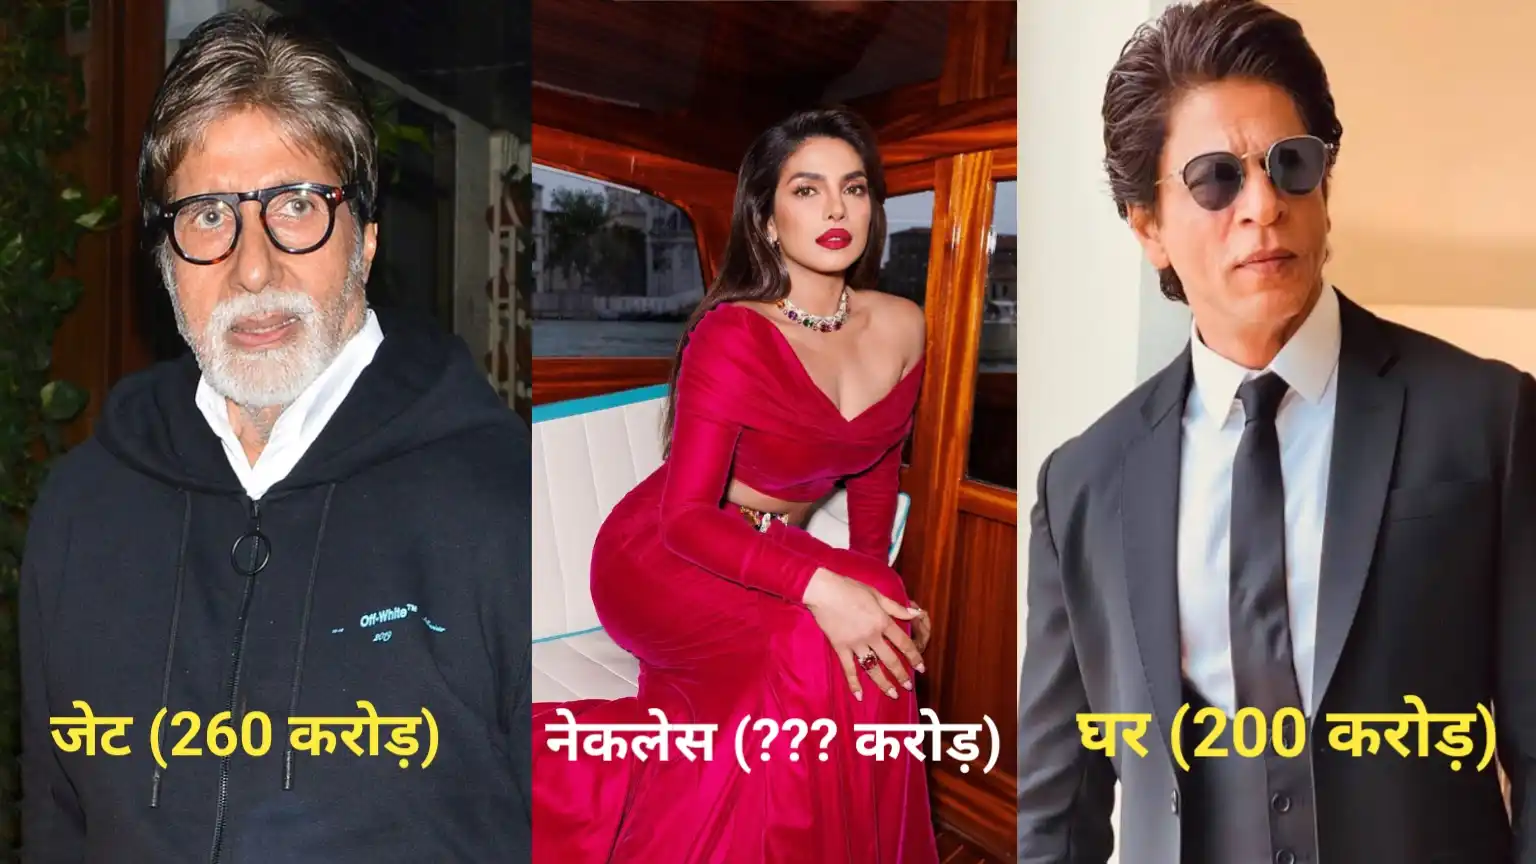 Amitabh Bachchan, Shah Rukh Khan, Priyanka Chopra